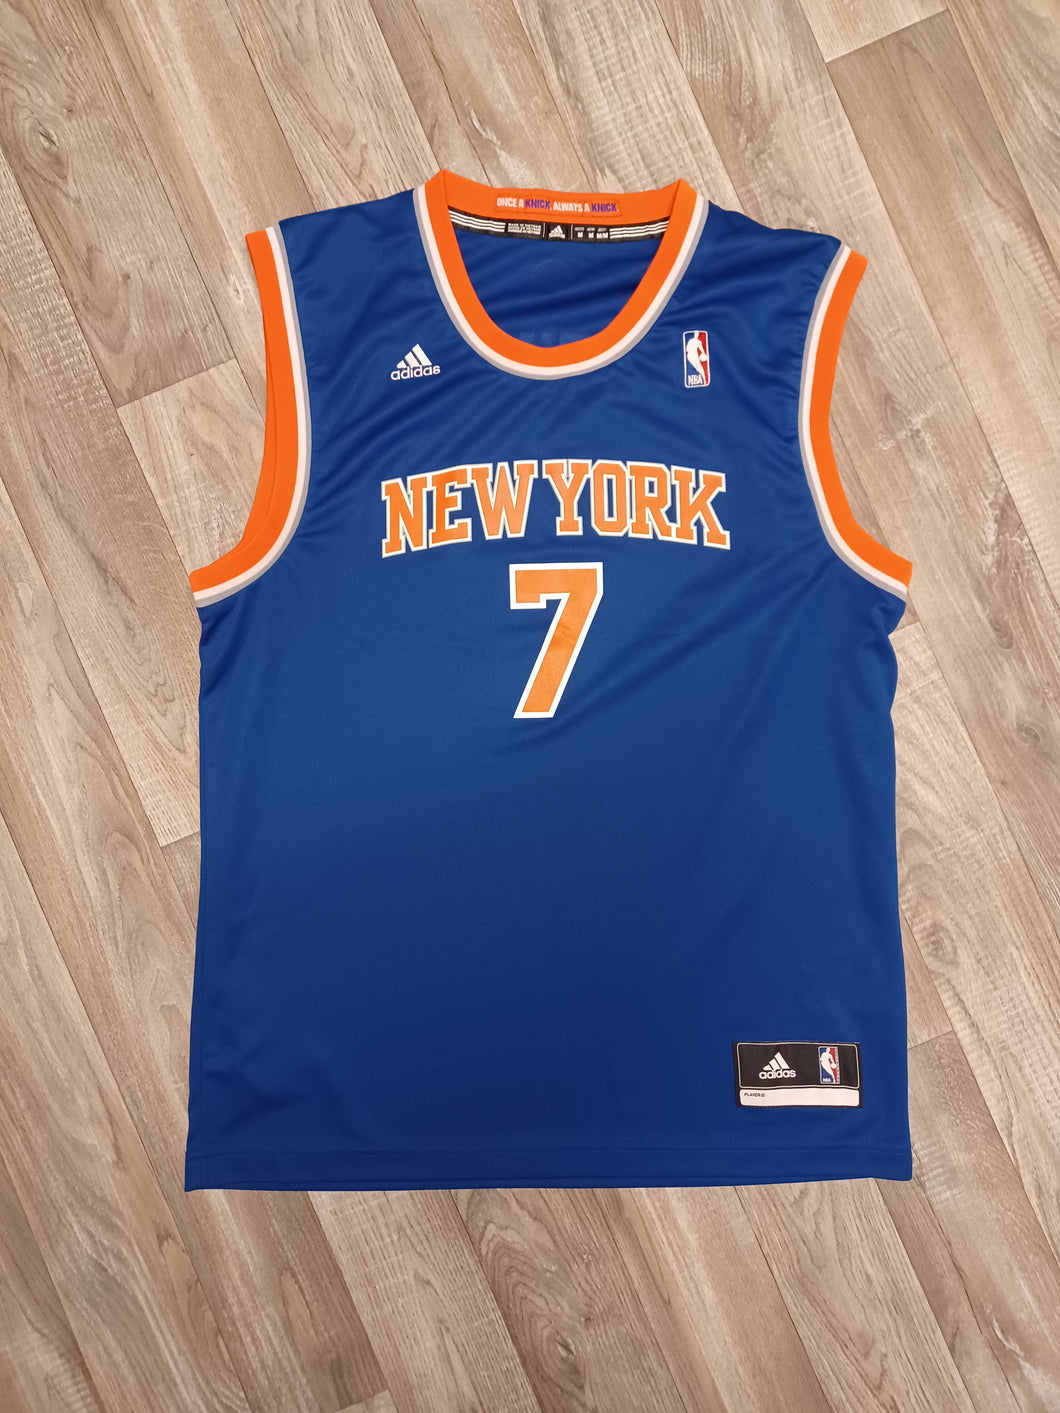 Vintage New York Knicks Carmelo Anthony Basketball Jersey